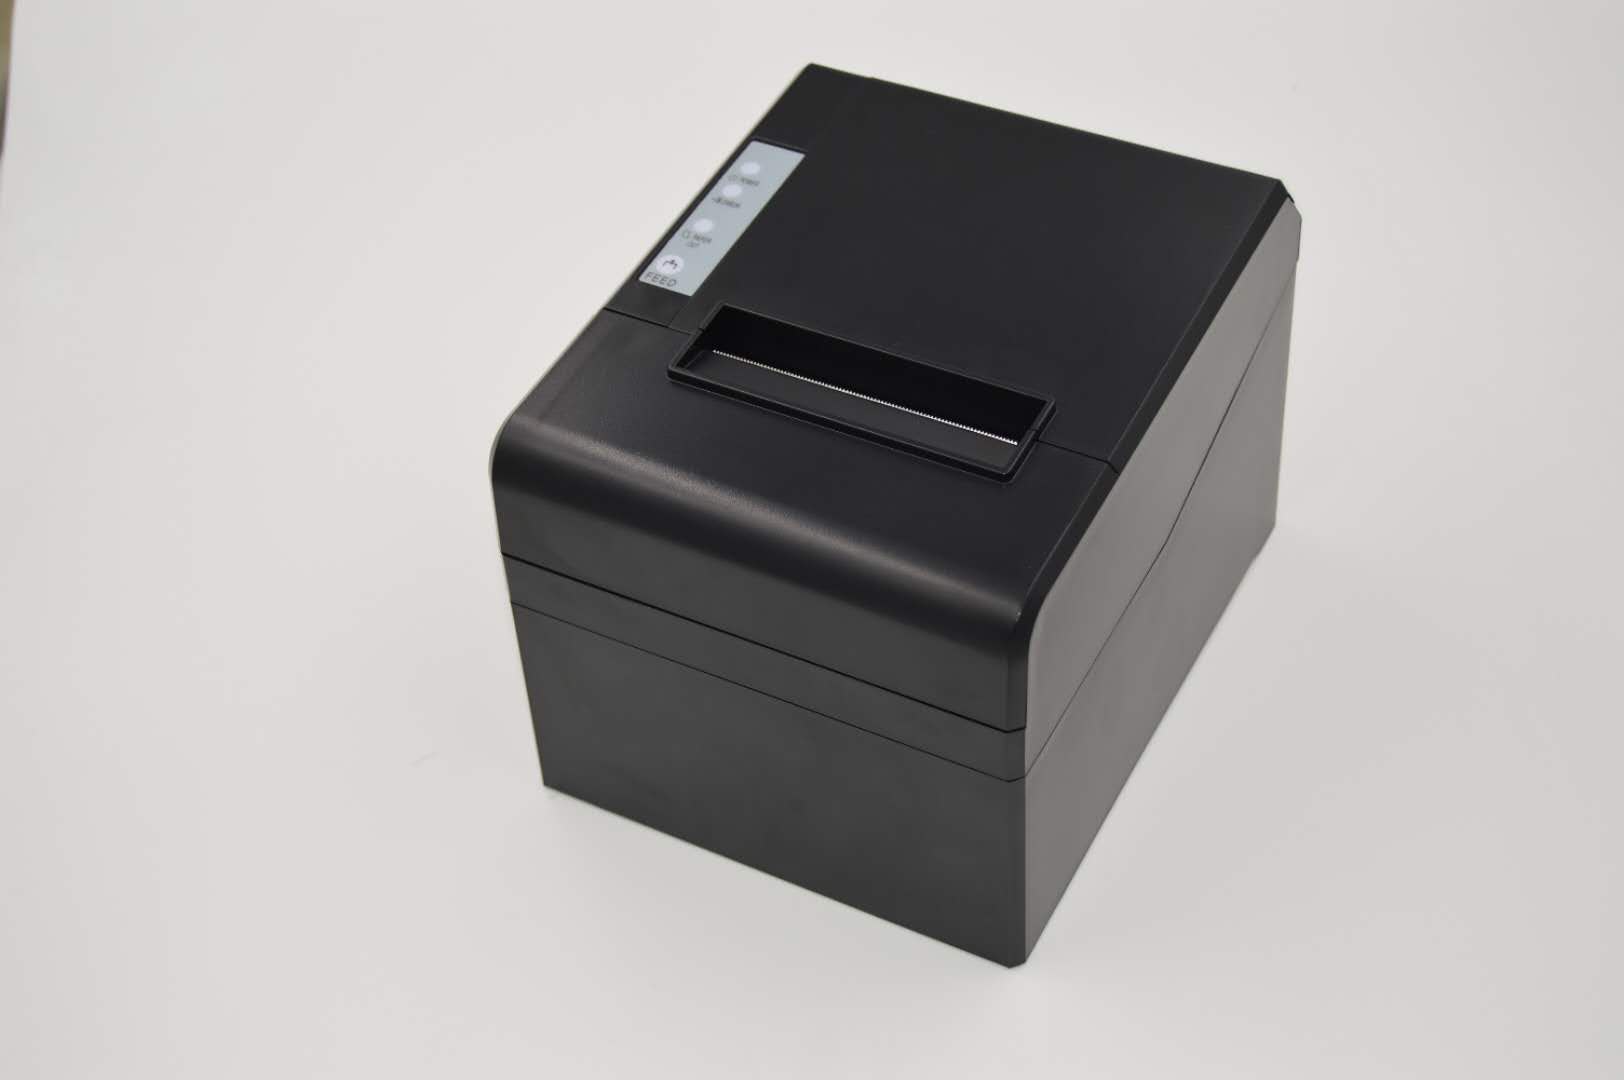 Impresora termal directa de la impresora del recibo de la impresora del recibo de la impresora del recibo de la impresión del recibo termal de 3inch con la cortadora automática